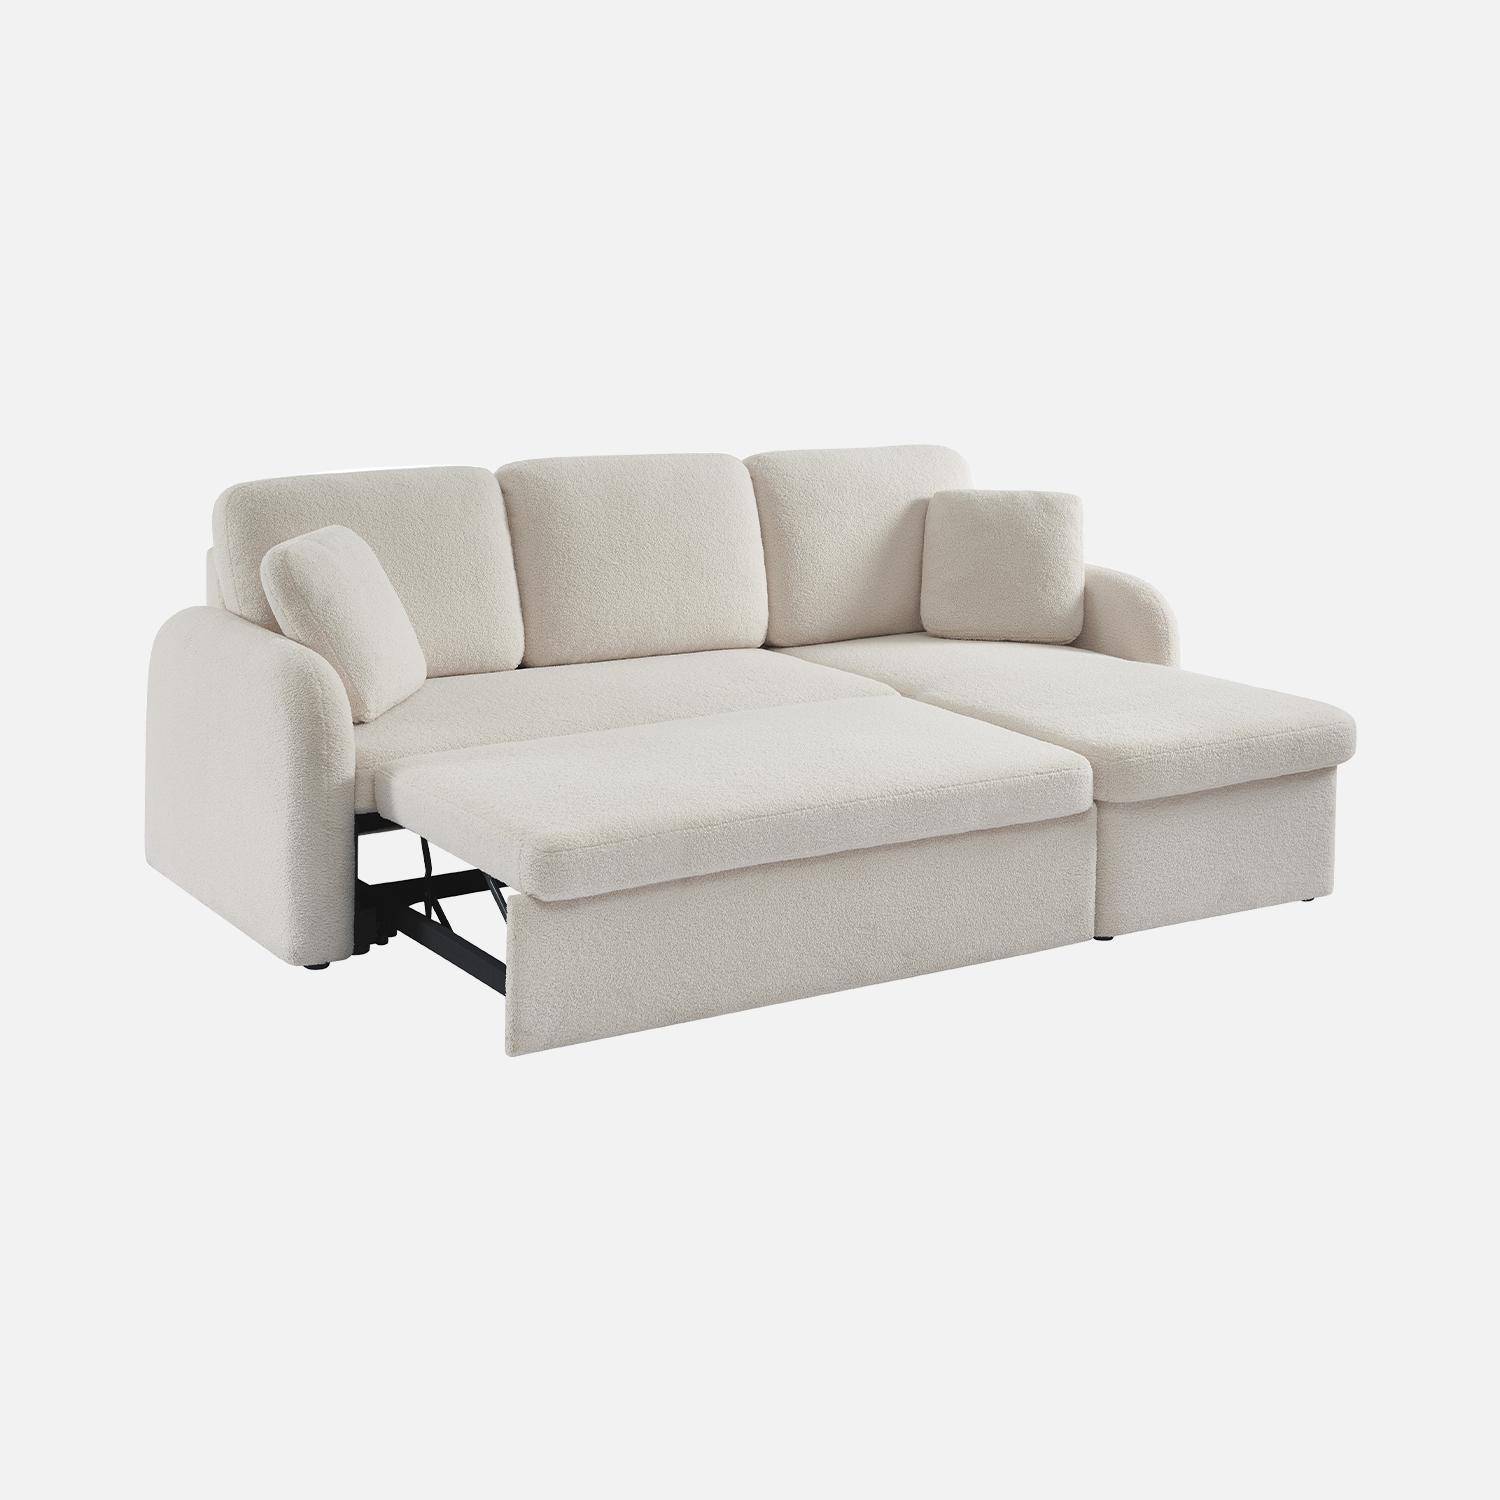 Sofá cama esquinero de 3 plazas en tejido borreguito blanco, sillón esquinero reversible, caja de almacenaje, Milano Photo7